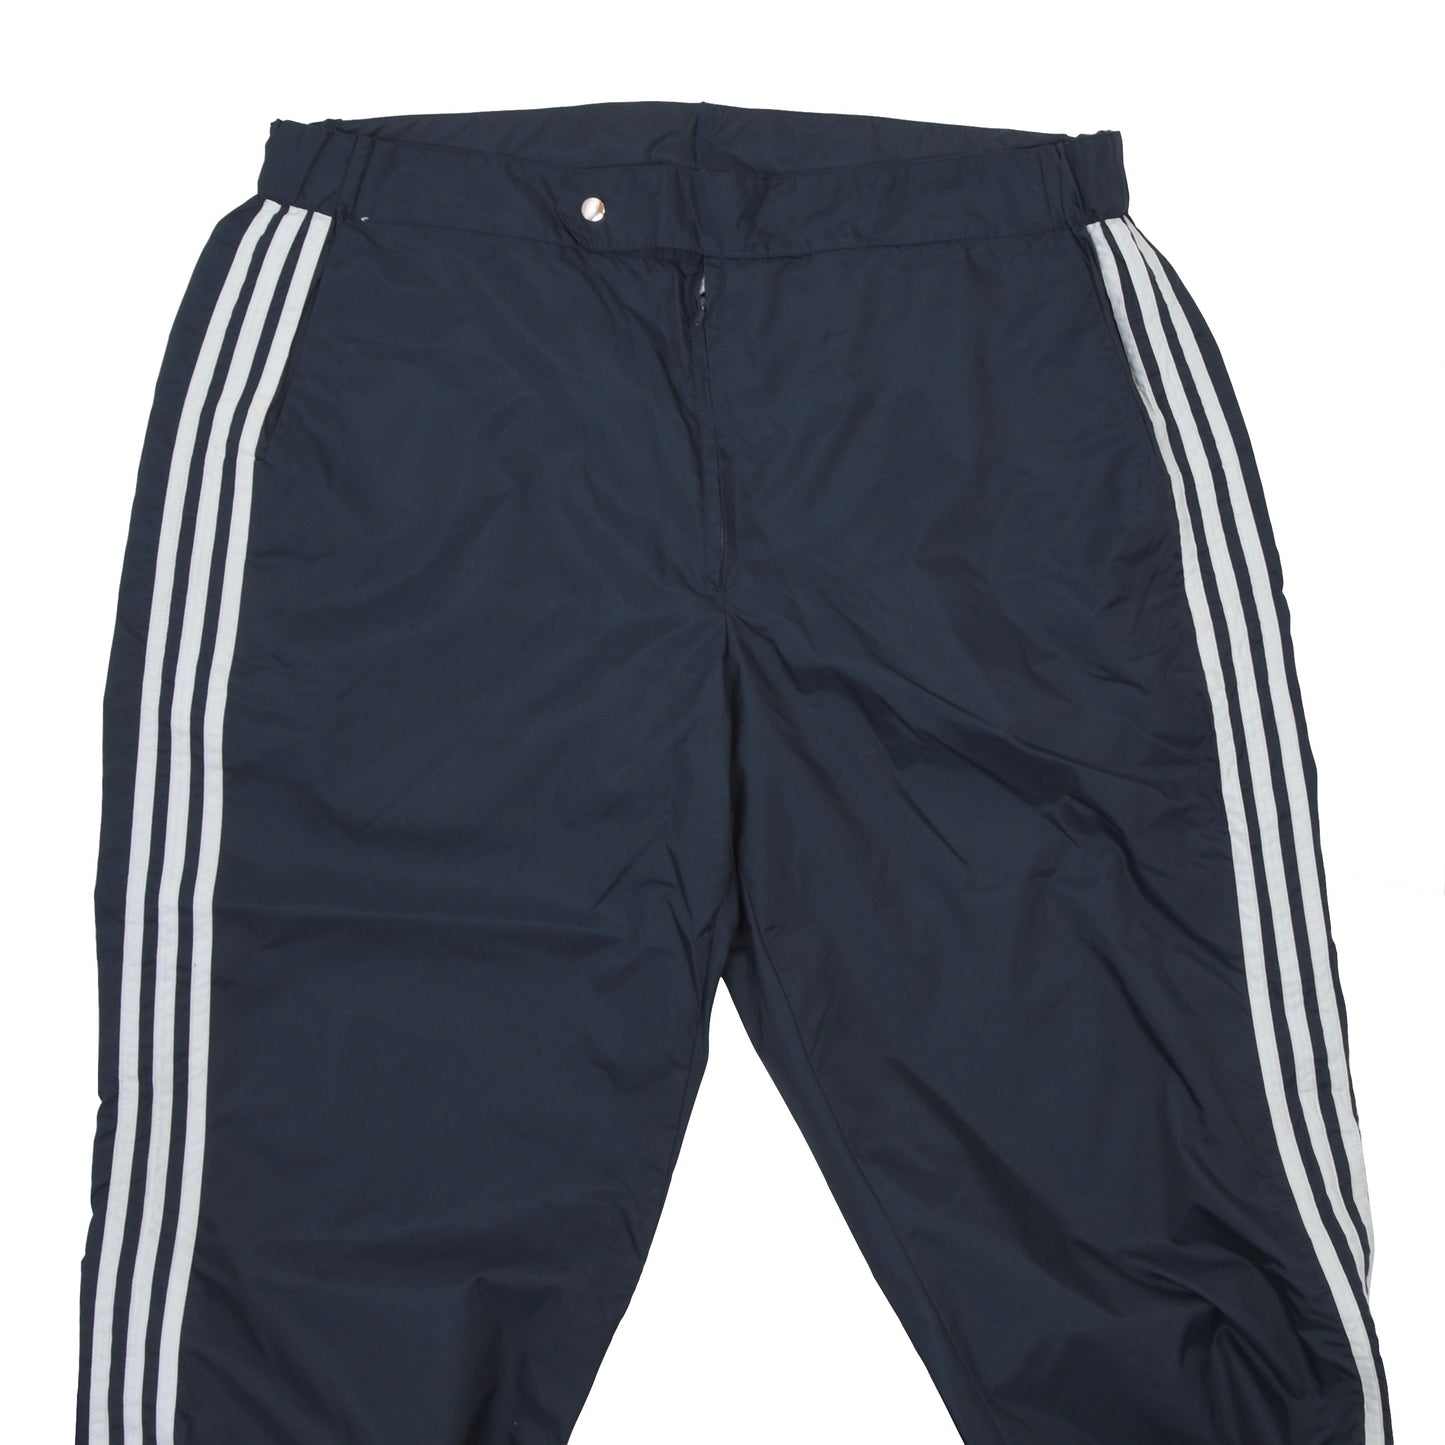 Vintage '80s Adidas Nylon Rain Pants Size D56 - Navy Blue